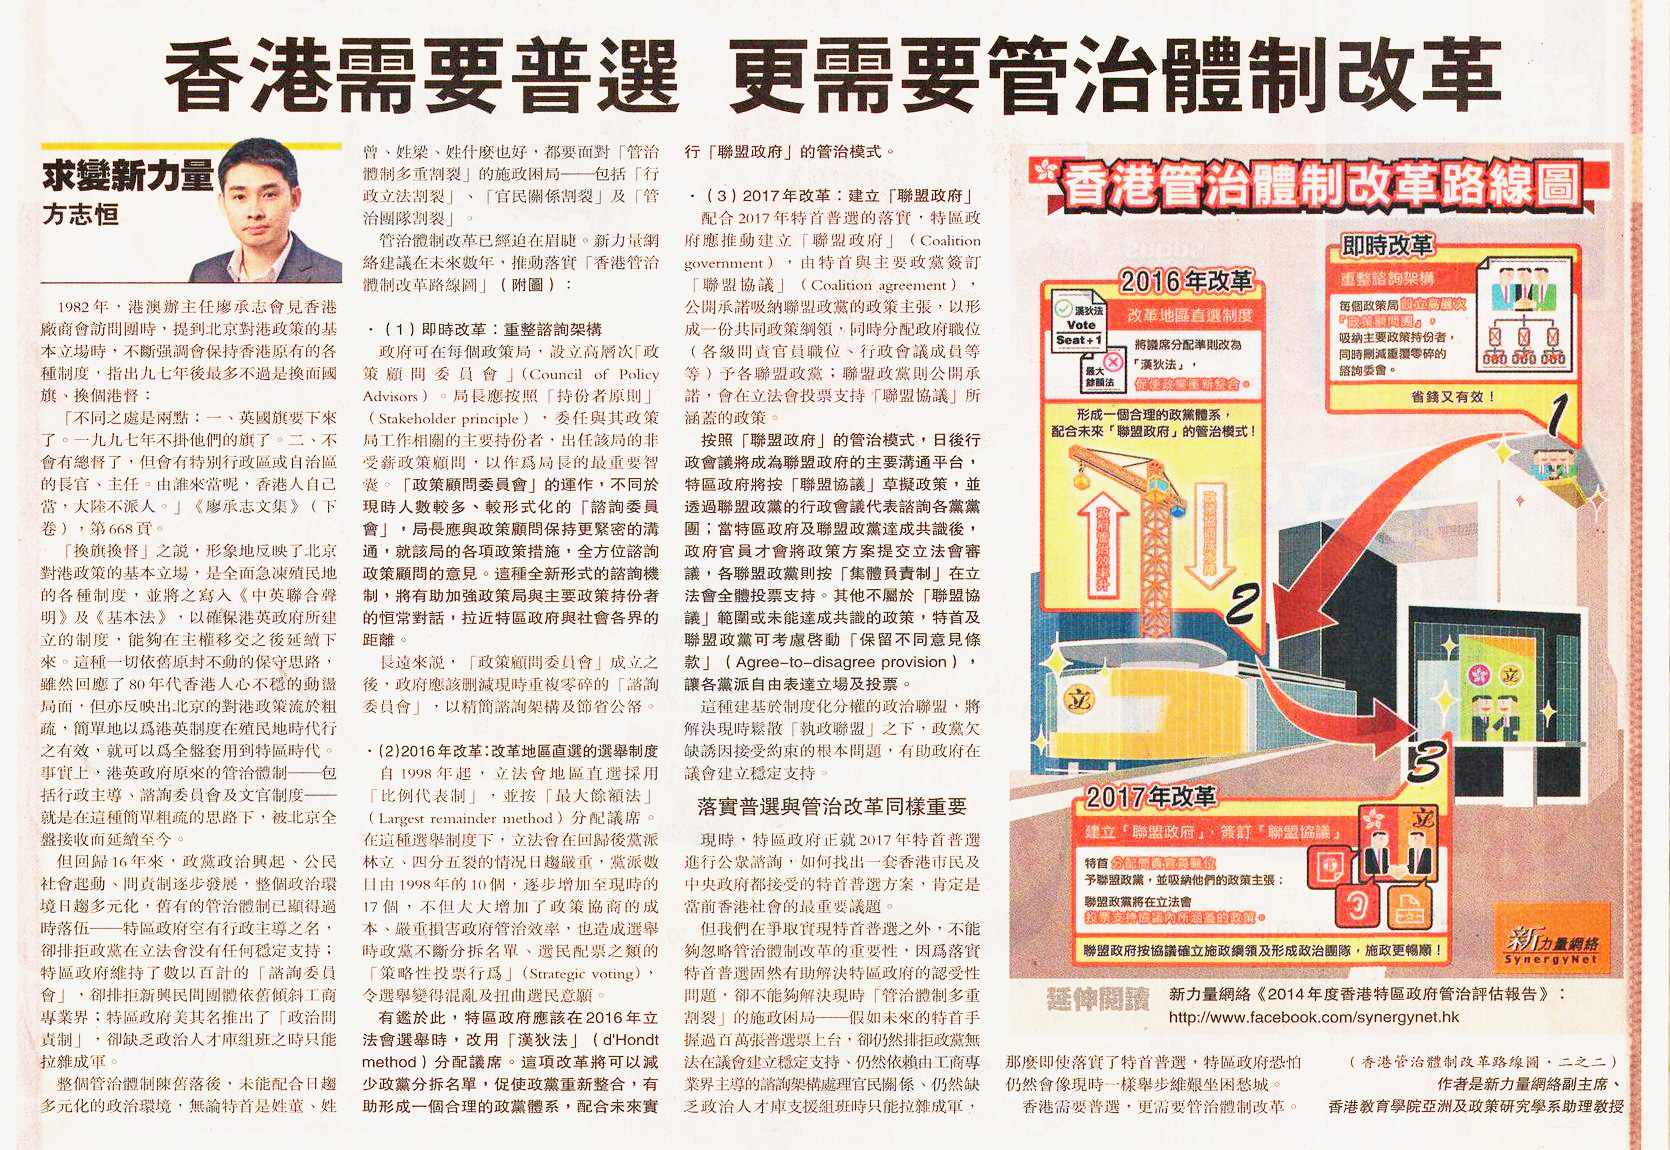 明報報章專欄 (2014年1月21日)：香港需要普選 更需要管治體制改革